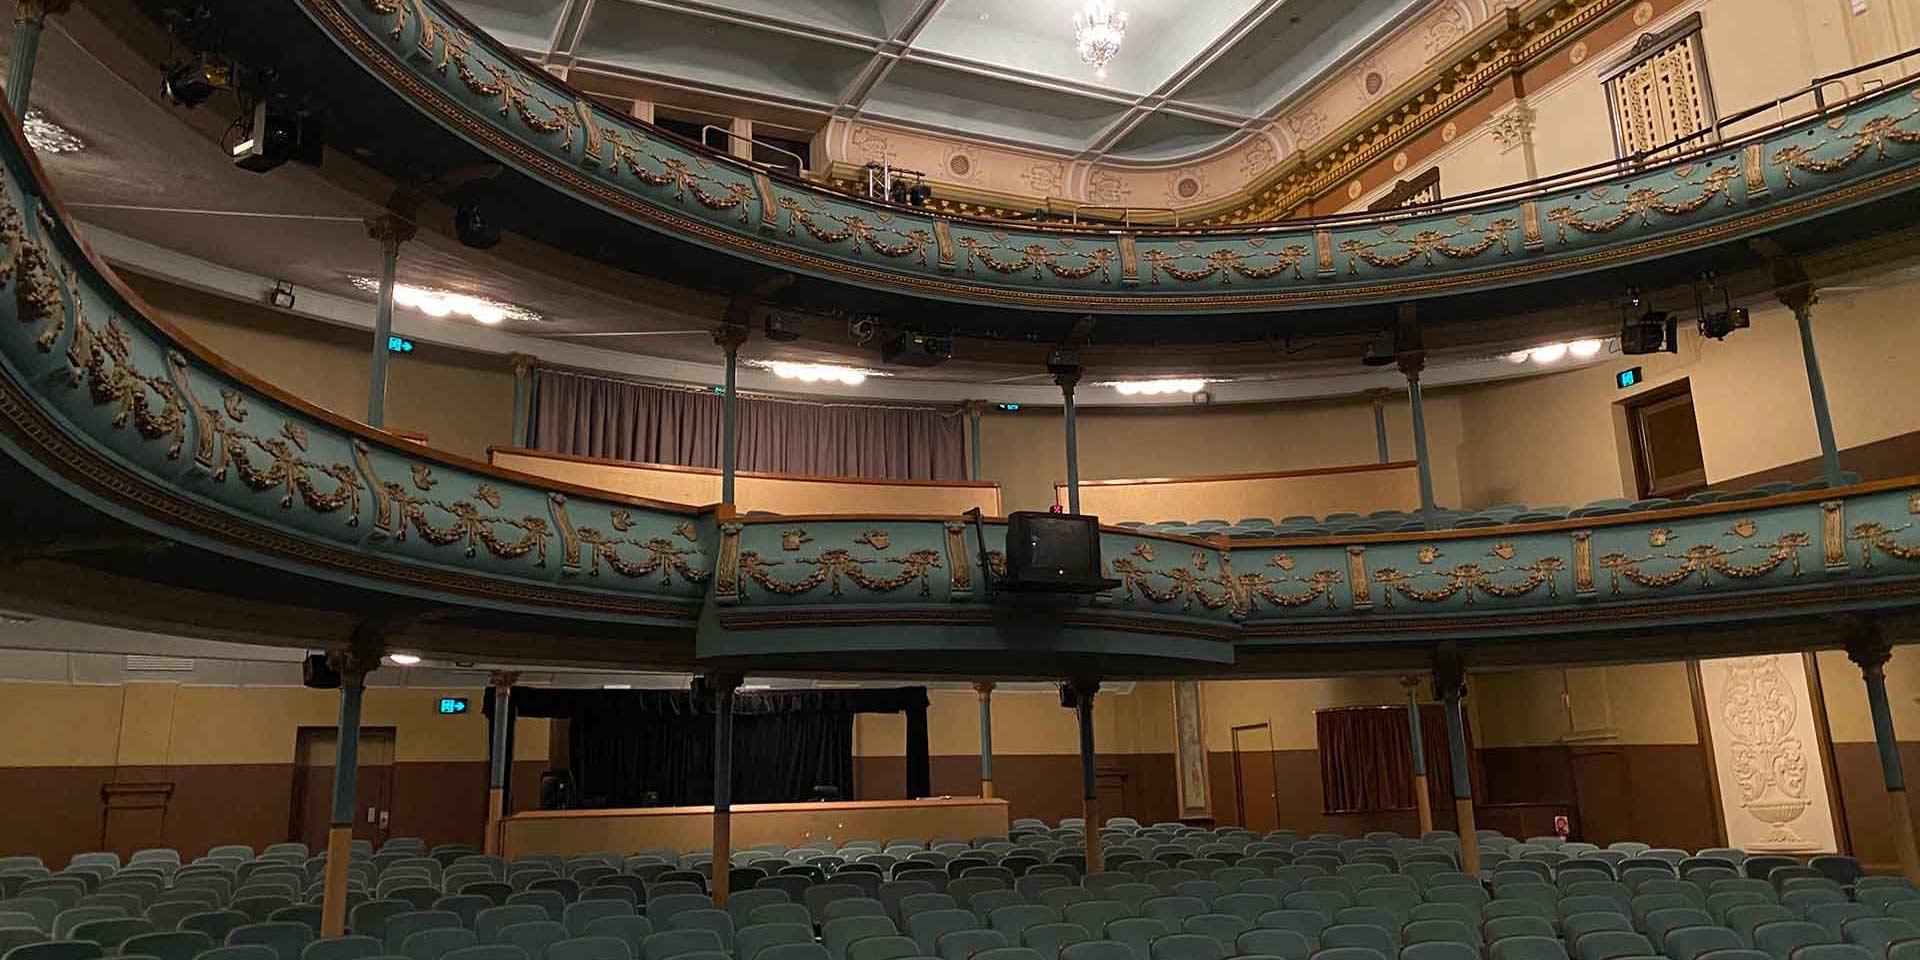 Her Majesty’s Theatre, Ballarat